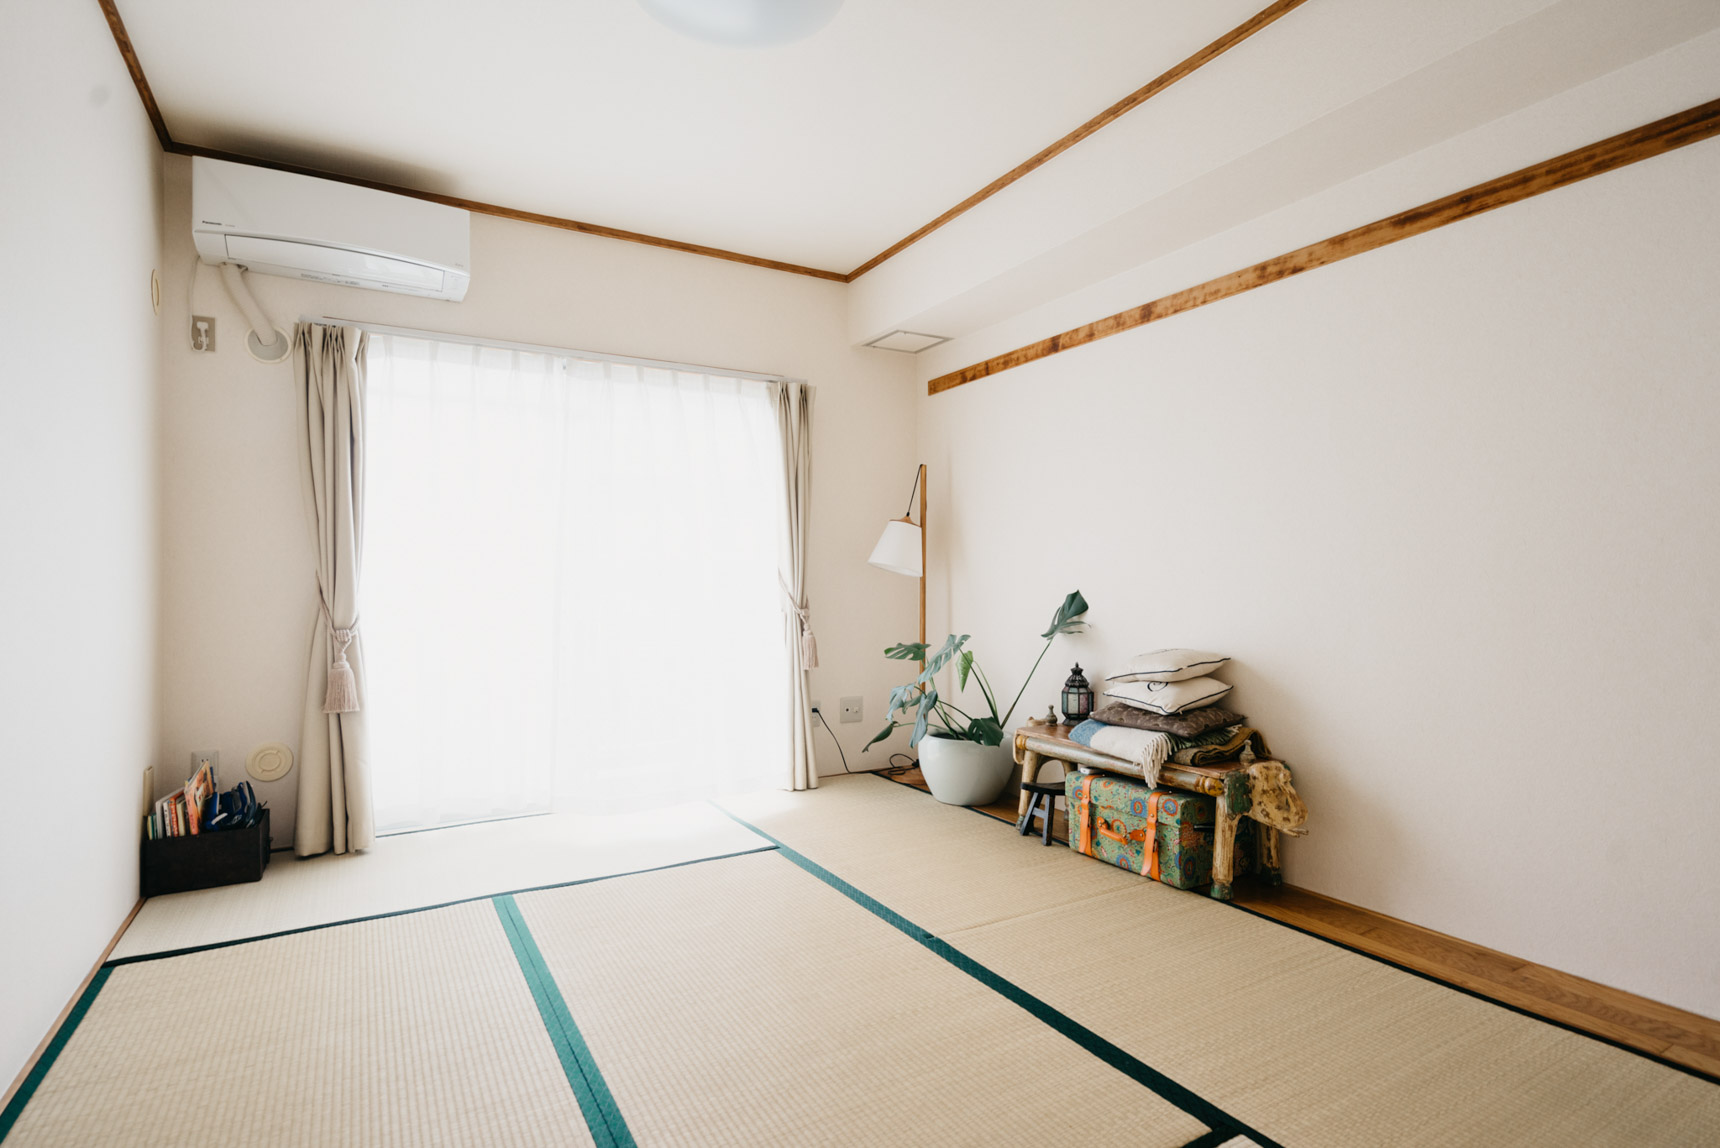 こちらは、反対側にある畳のお部屋。夜は家族4人分の布団を敷いてみんなで寝ます。子どもたちは日本的な暮らし方ができることに大喜びだったそう。